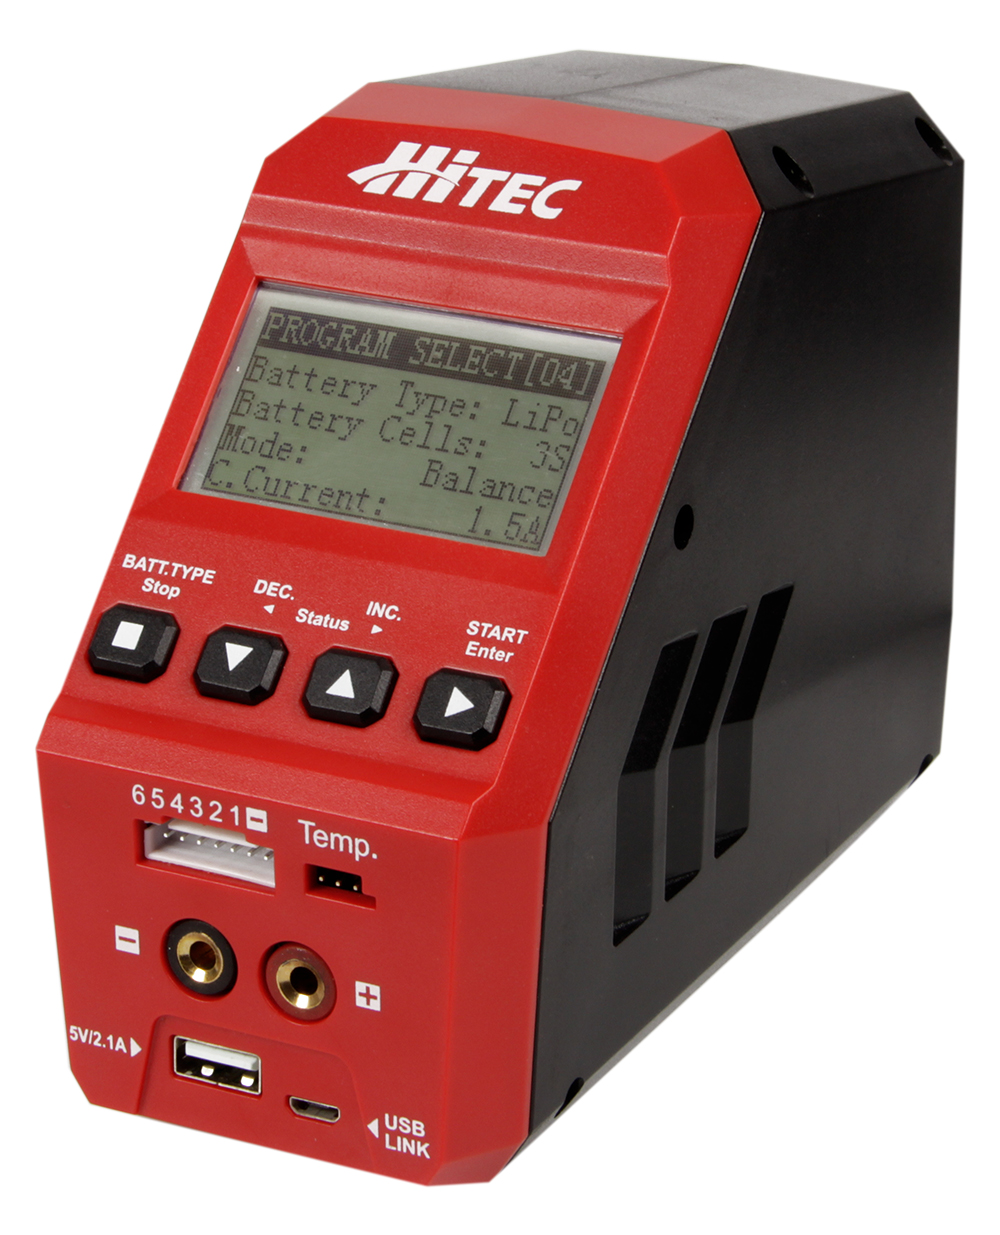 Hitec HITEC Multicharger X1 RED